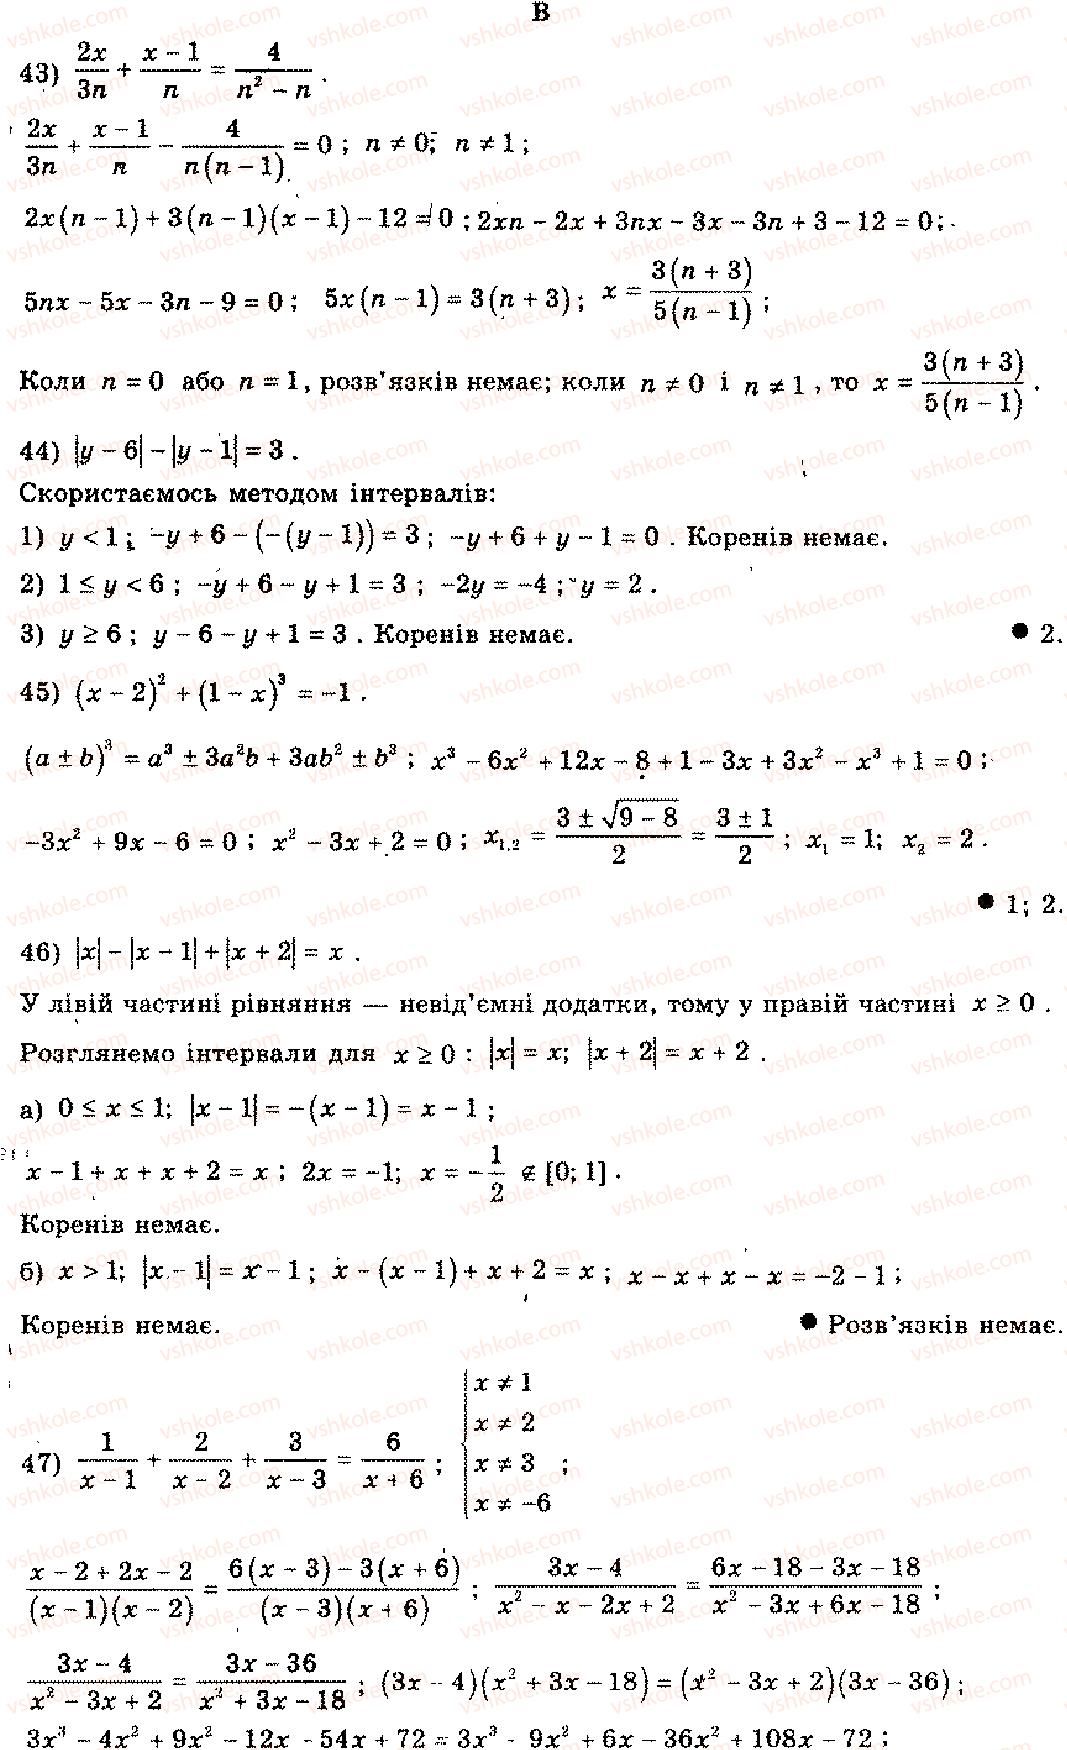 11-algebra-mi-shkil-zi-slepkan-os-dubinchuk-2006--rozdil-15-povtorennya-kursu-algebri-osnovnoyi-shkoli-3-1-rnd6516.jpg